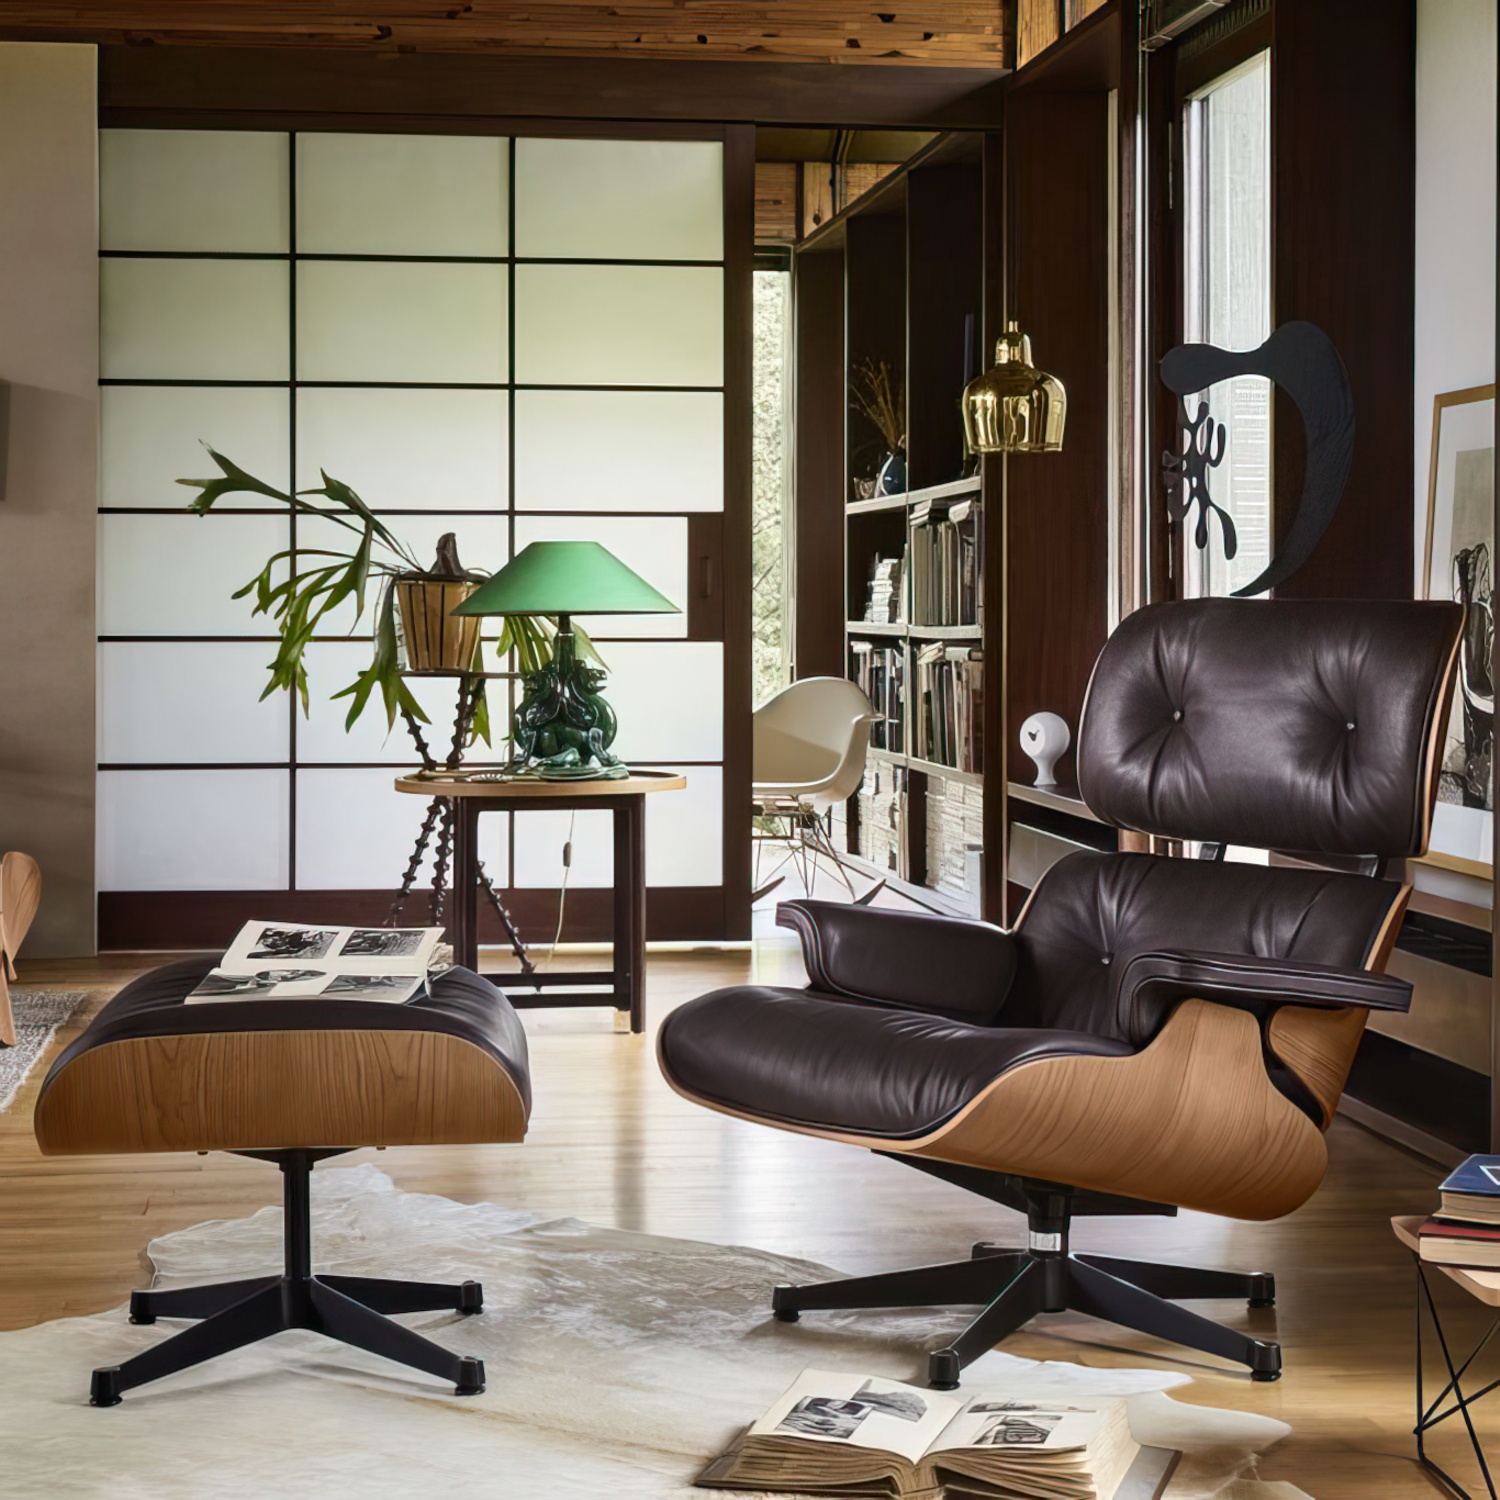 Lounge Chair und Ottoman 41213300 Amerikanischer Kirschbaum Gestell schwarz Leder in Braun